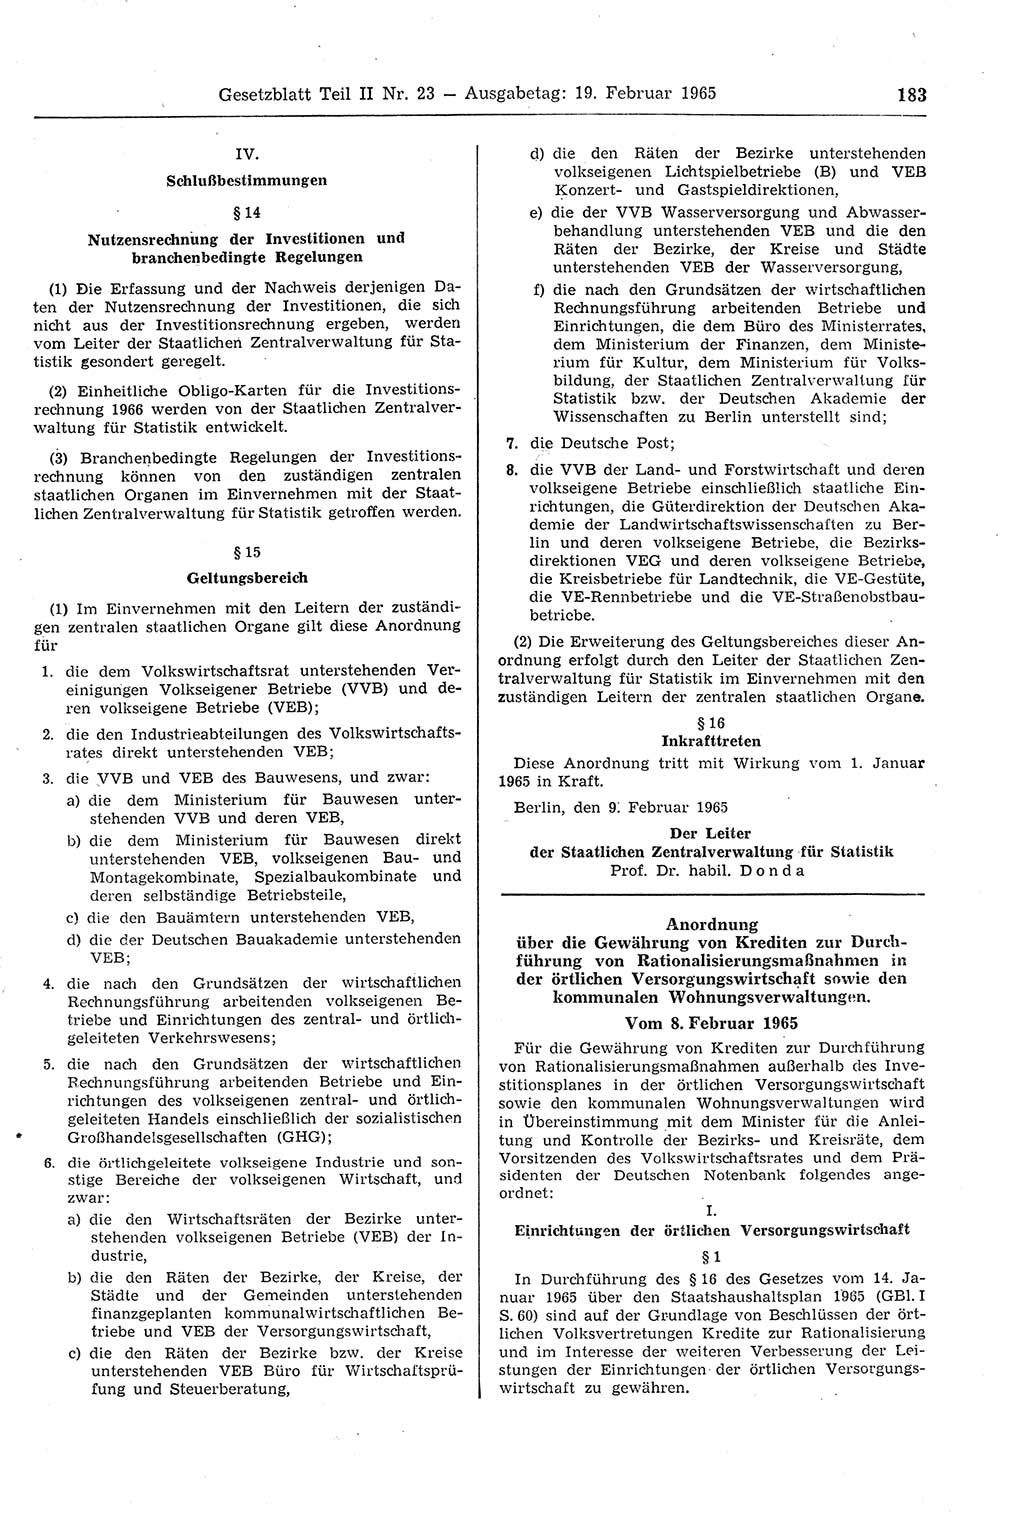 Gesetzblatt (GBl.) der Deutschen Demokratischen Republik (DDR) Teil ⅠⅠ 1965, Seite 183 (GBl. DDR ⅠⅠ 1965, S. 183)